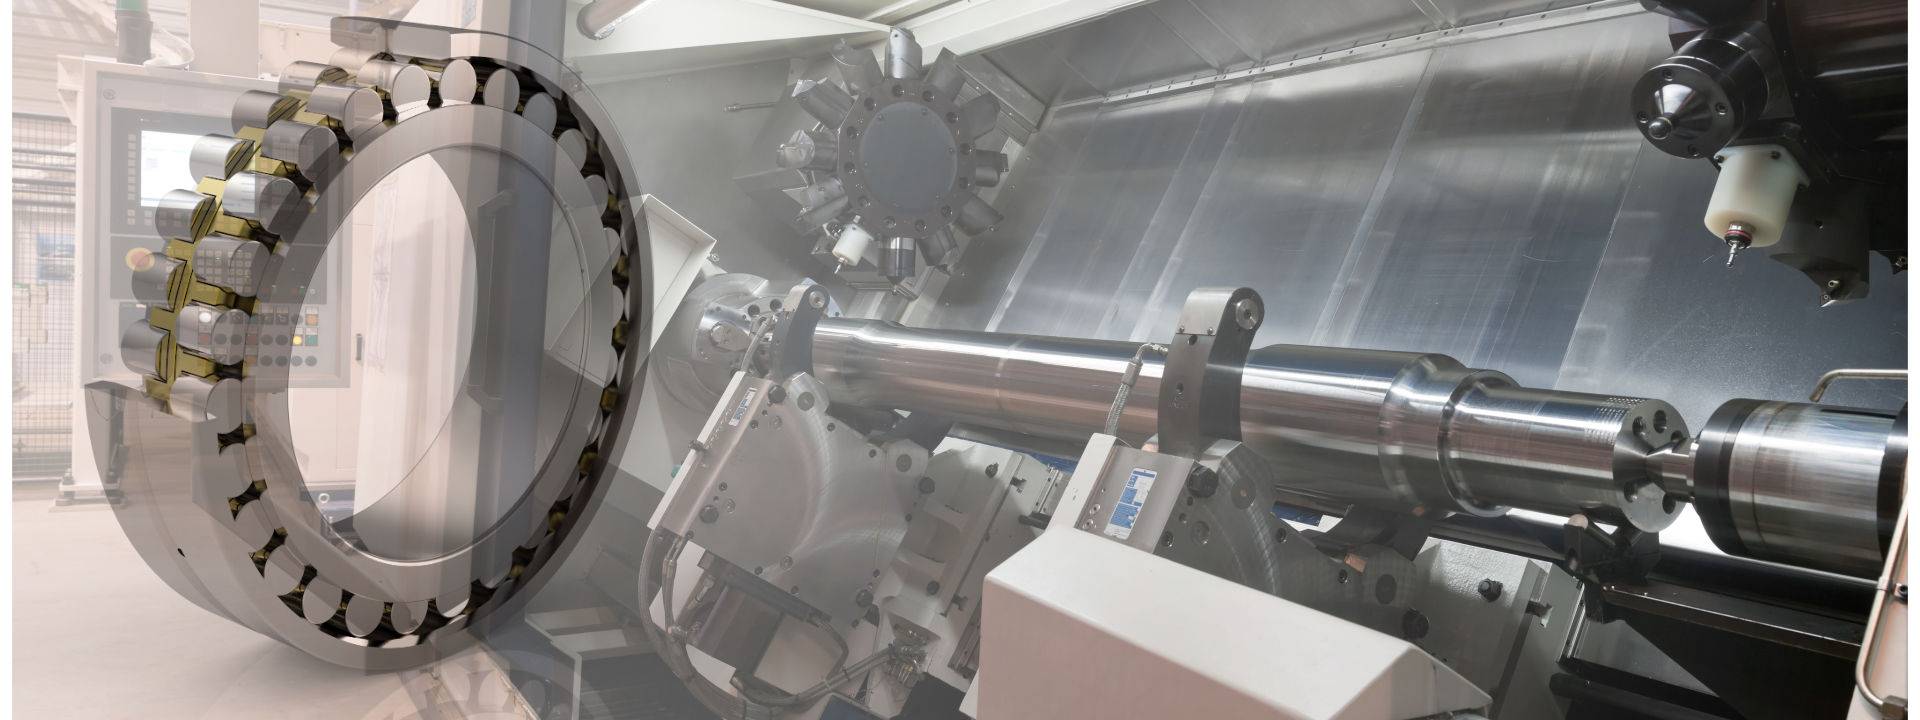 Bild einer Werkzeugmaschine mit einem zweireihigen Zylinderrollenlager